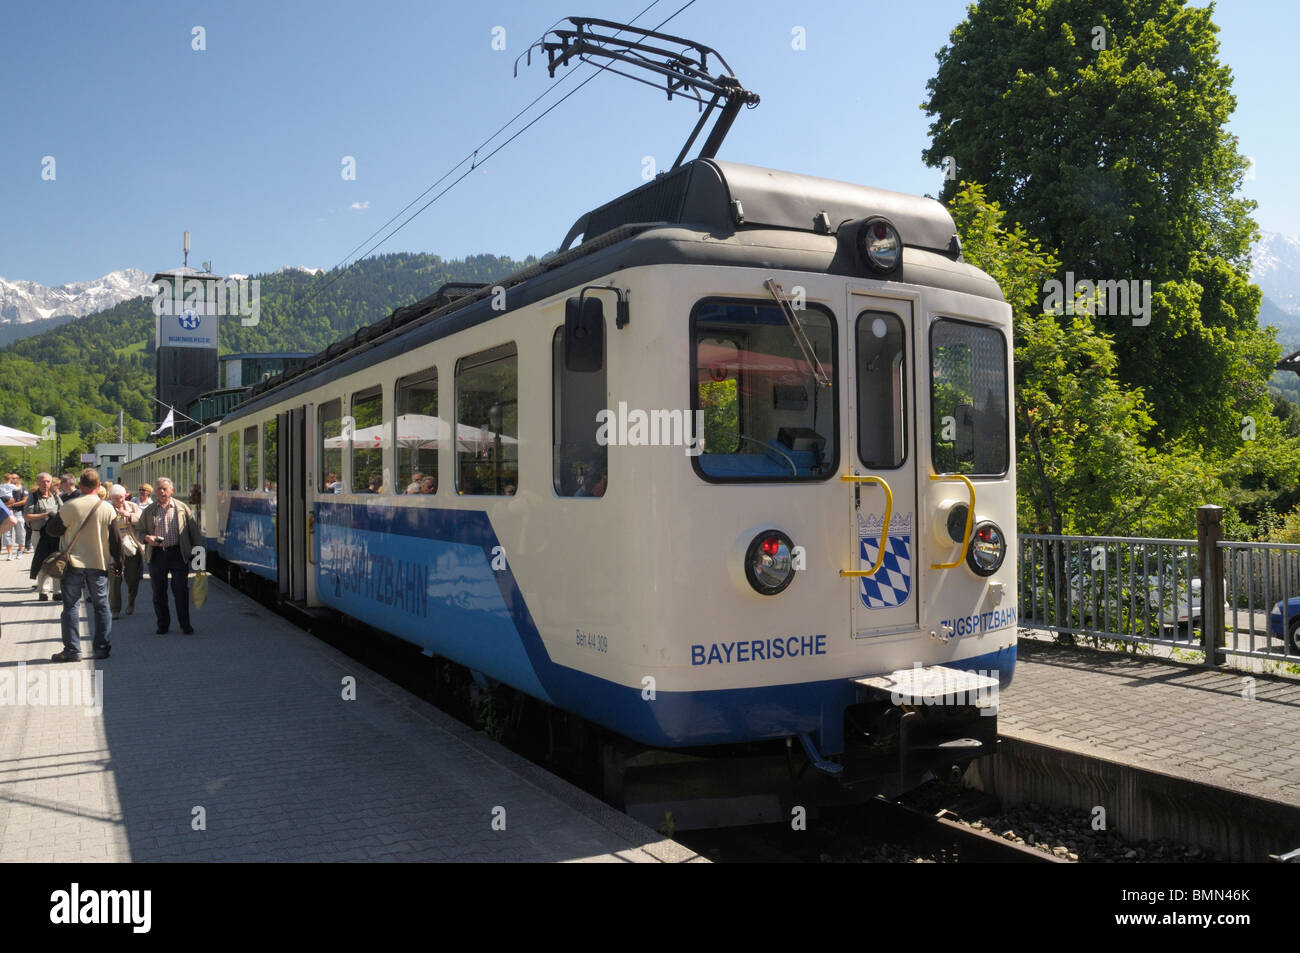 Train of the Bayerische Zugspitzbahn mountain railway, Garmisch-Partenkirchen, Bavaria Stock Photo